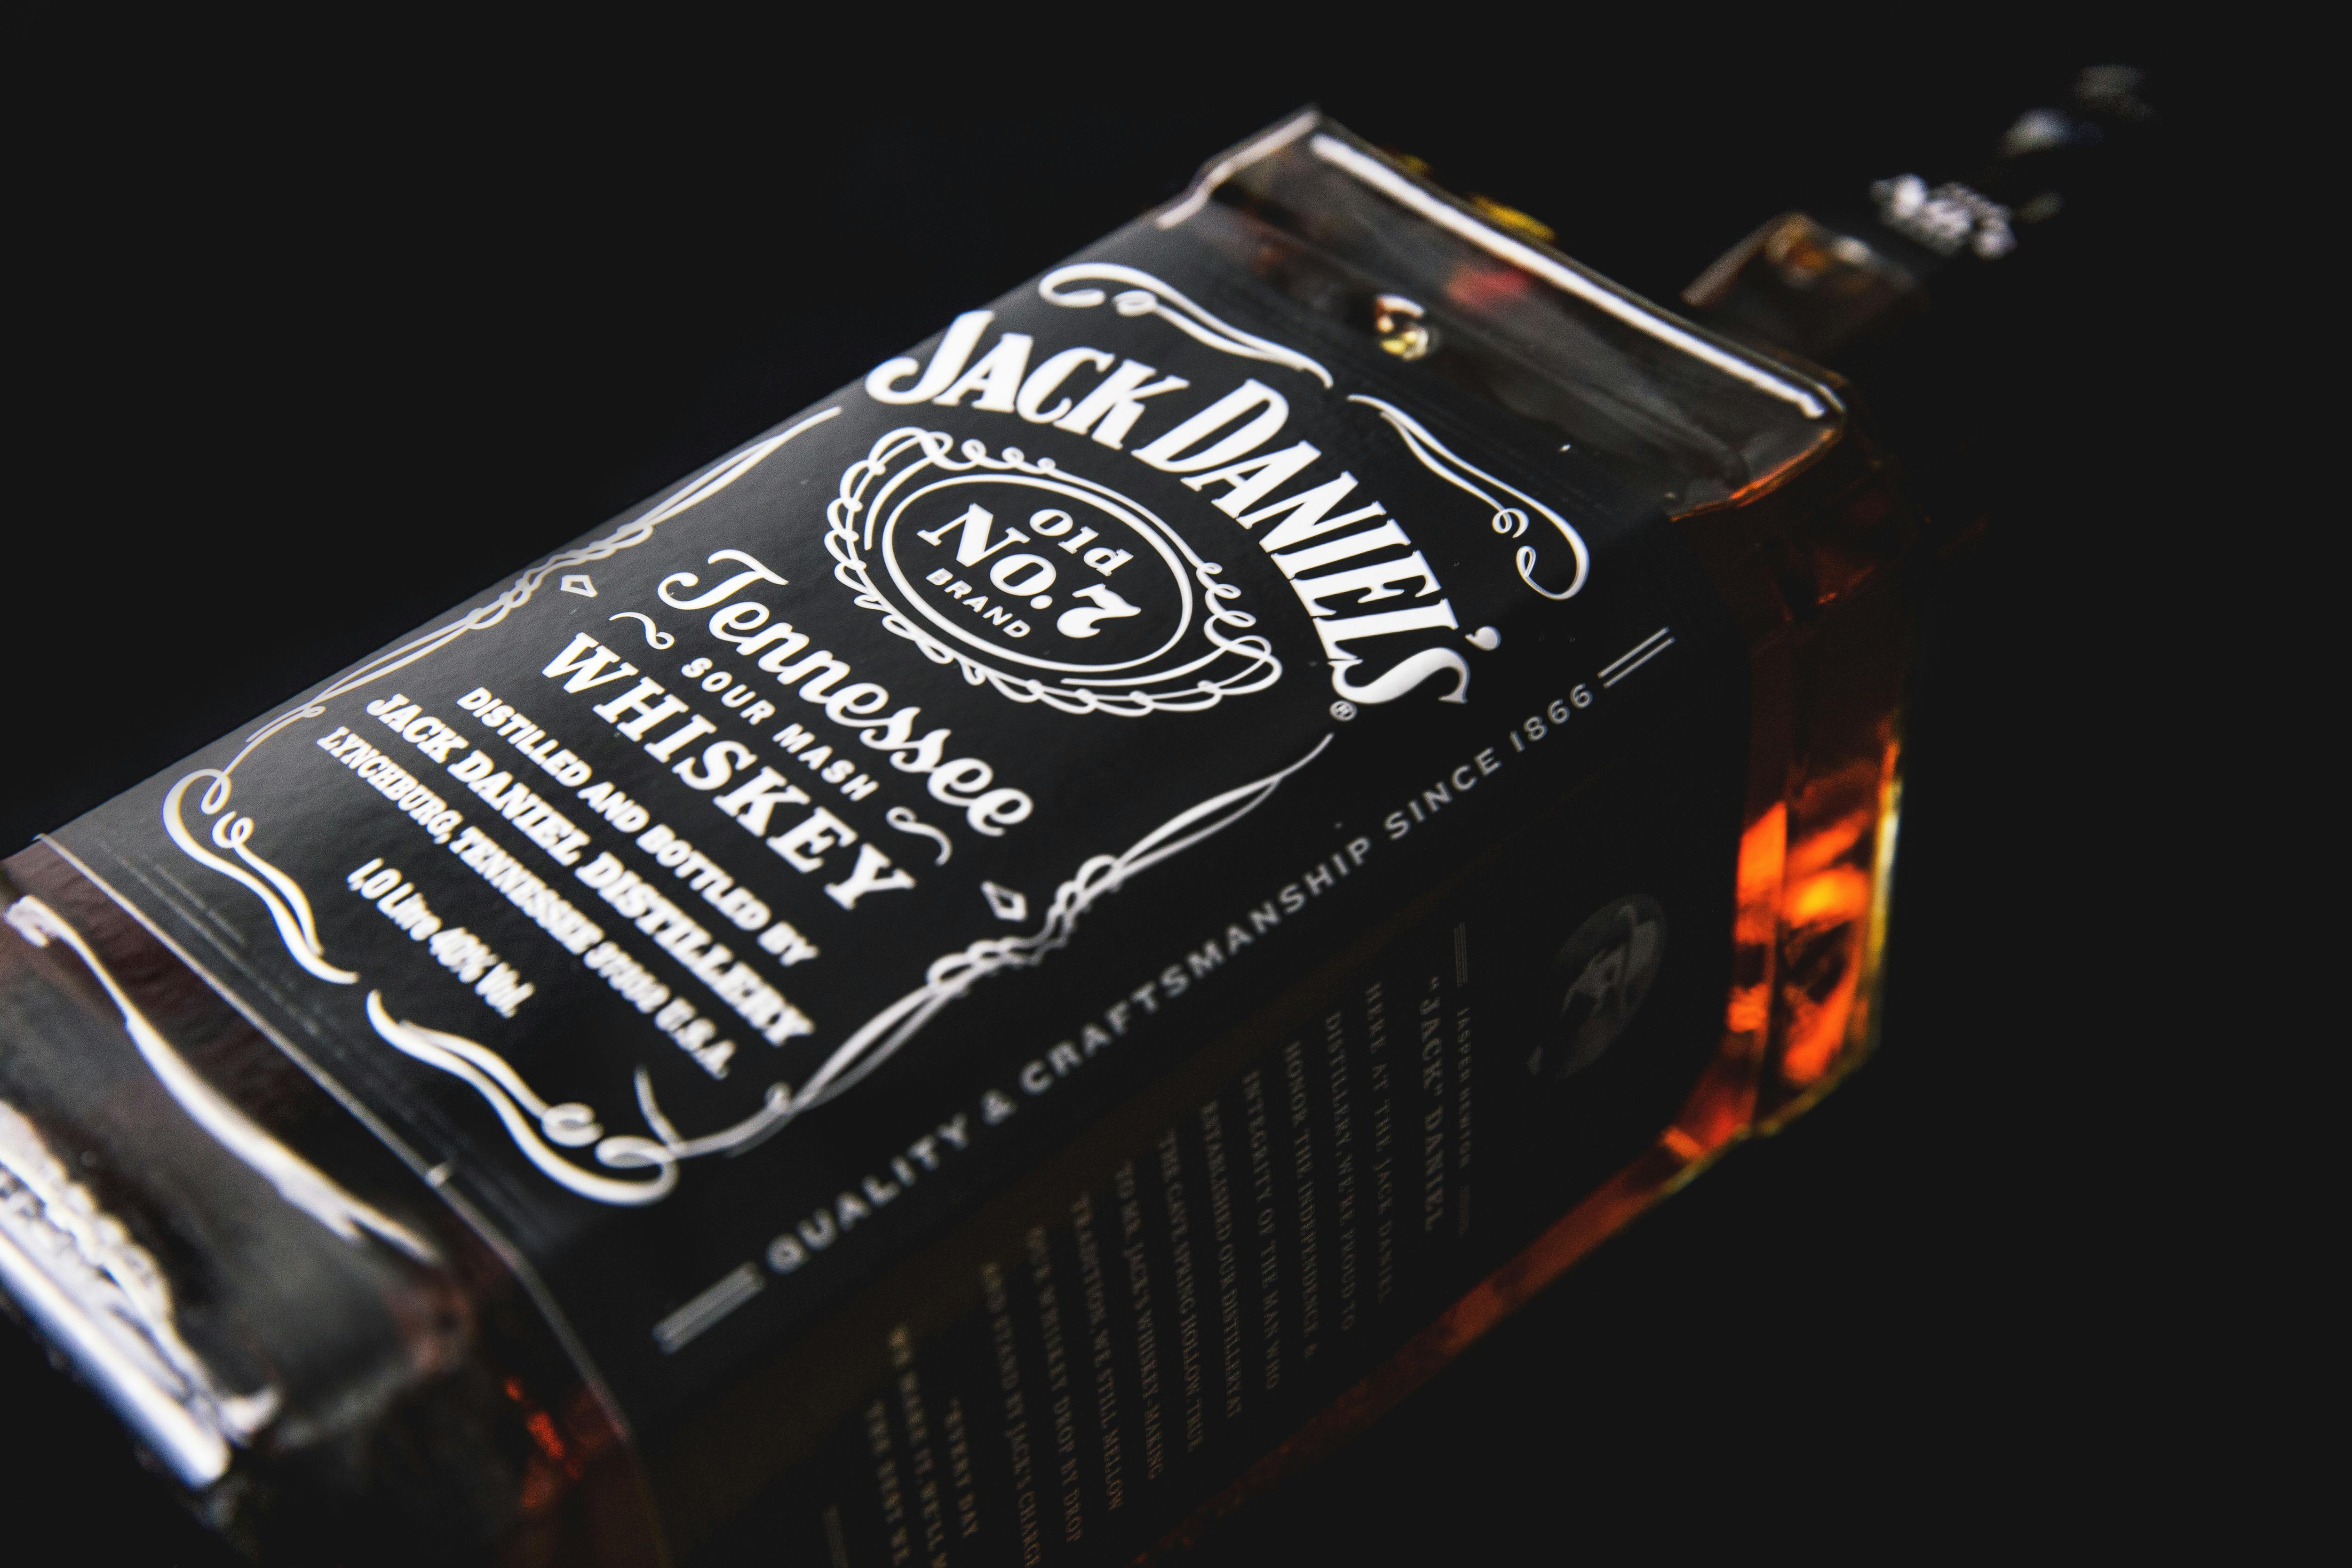 Jack Daniel S Bottle Free Stock Photo Images, Photos, Reviews